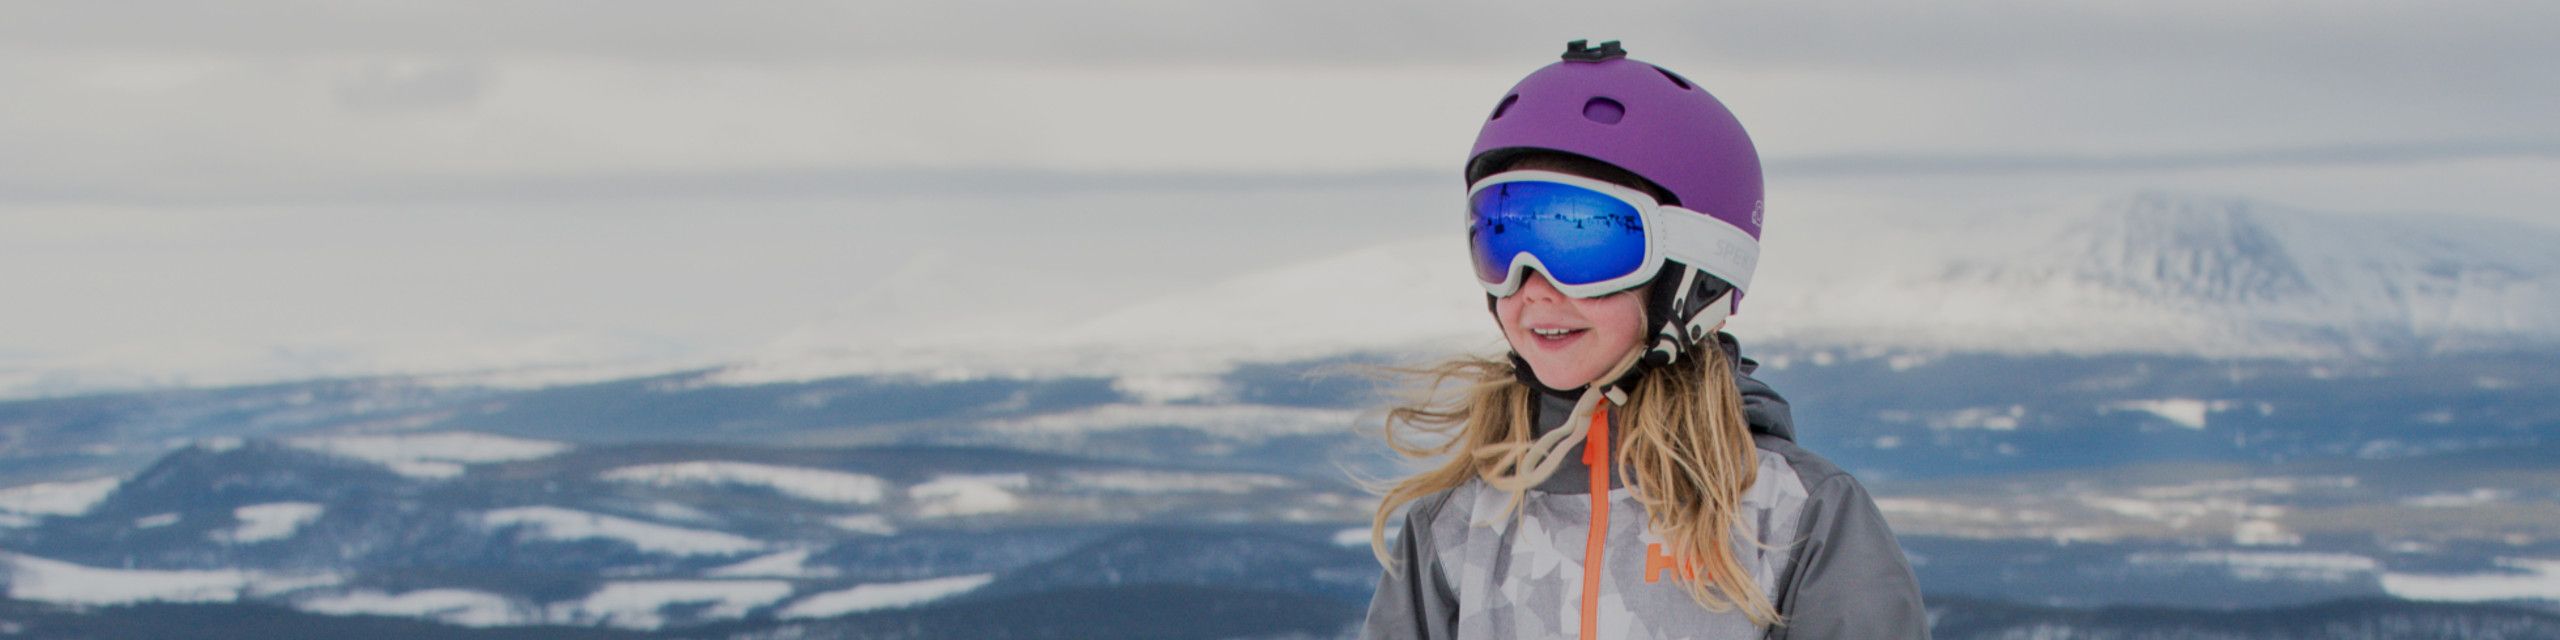 Ski Helmets for kids